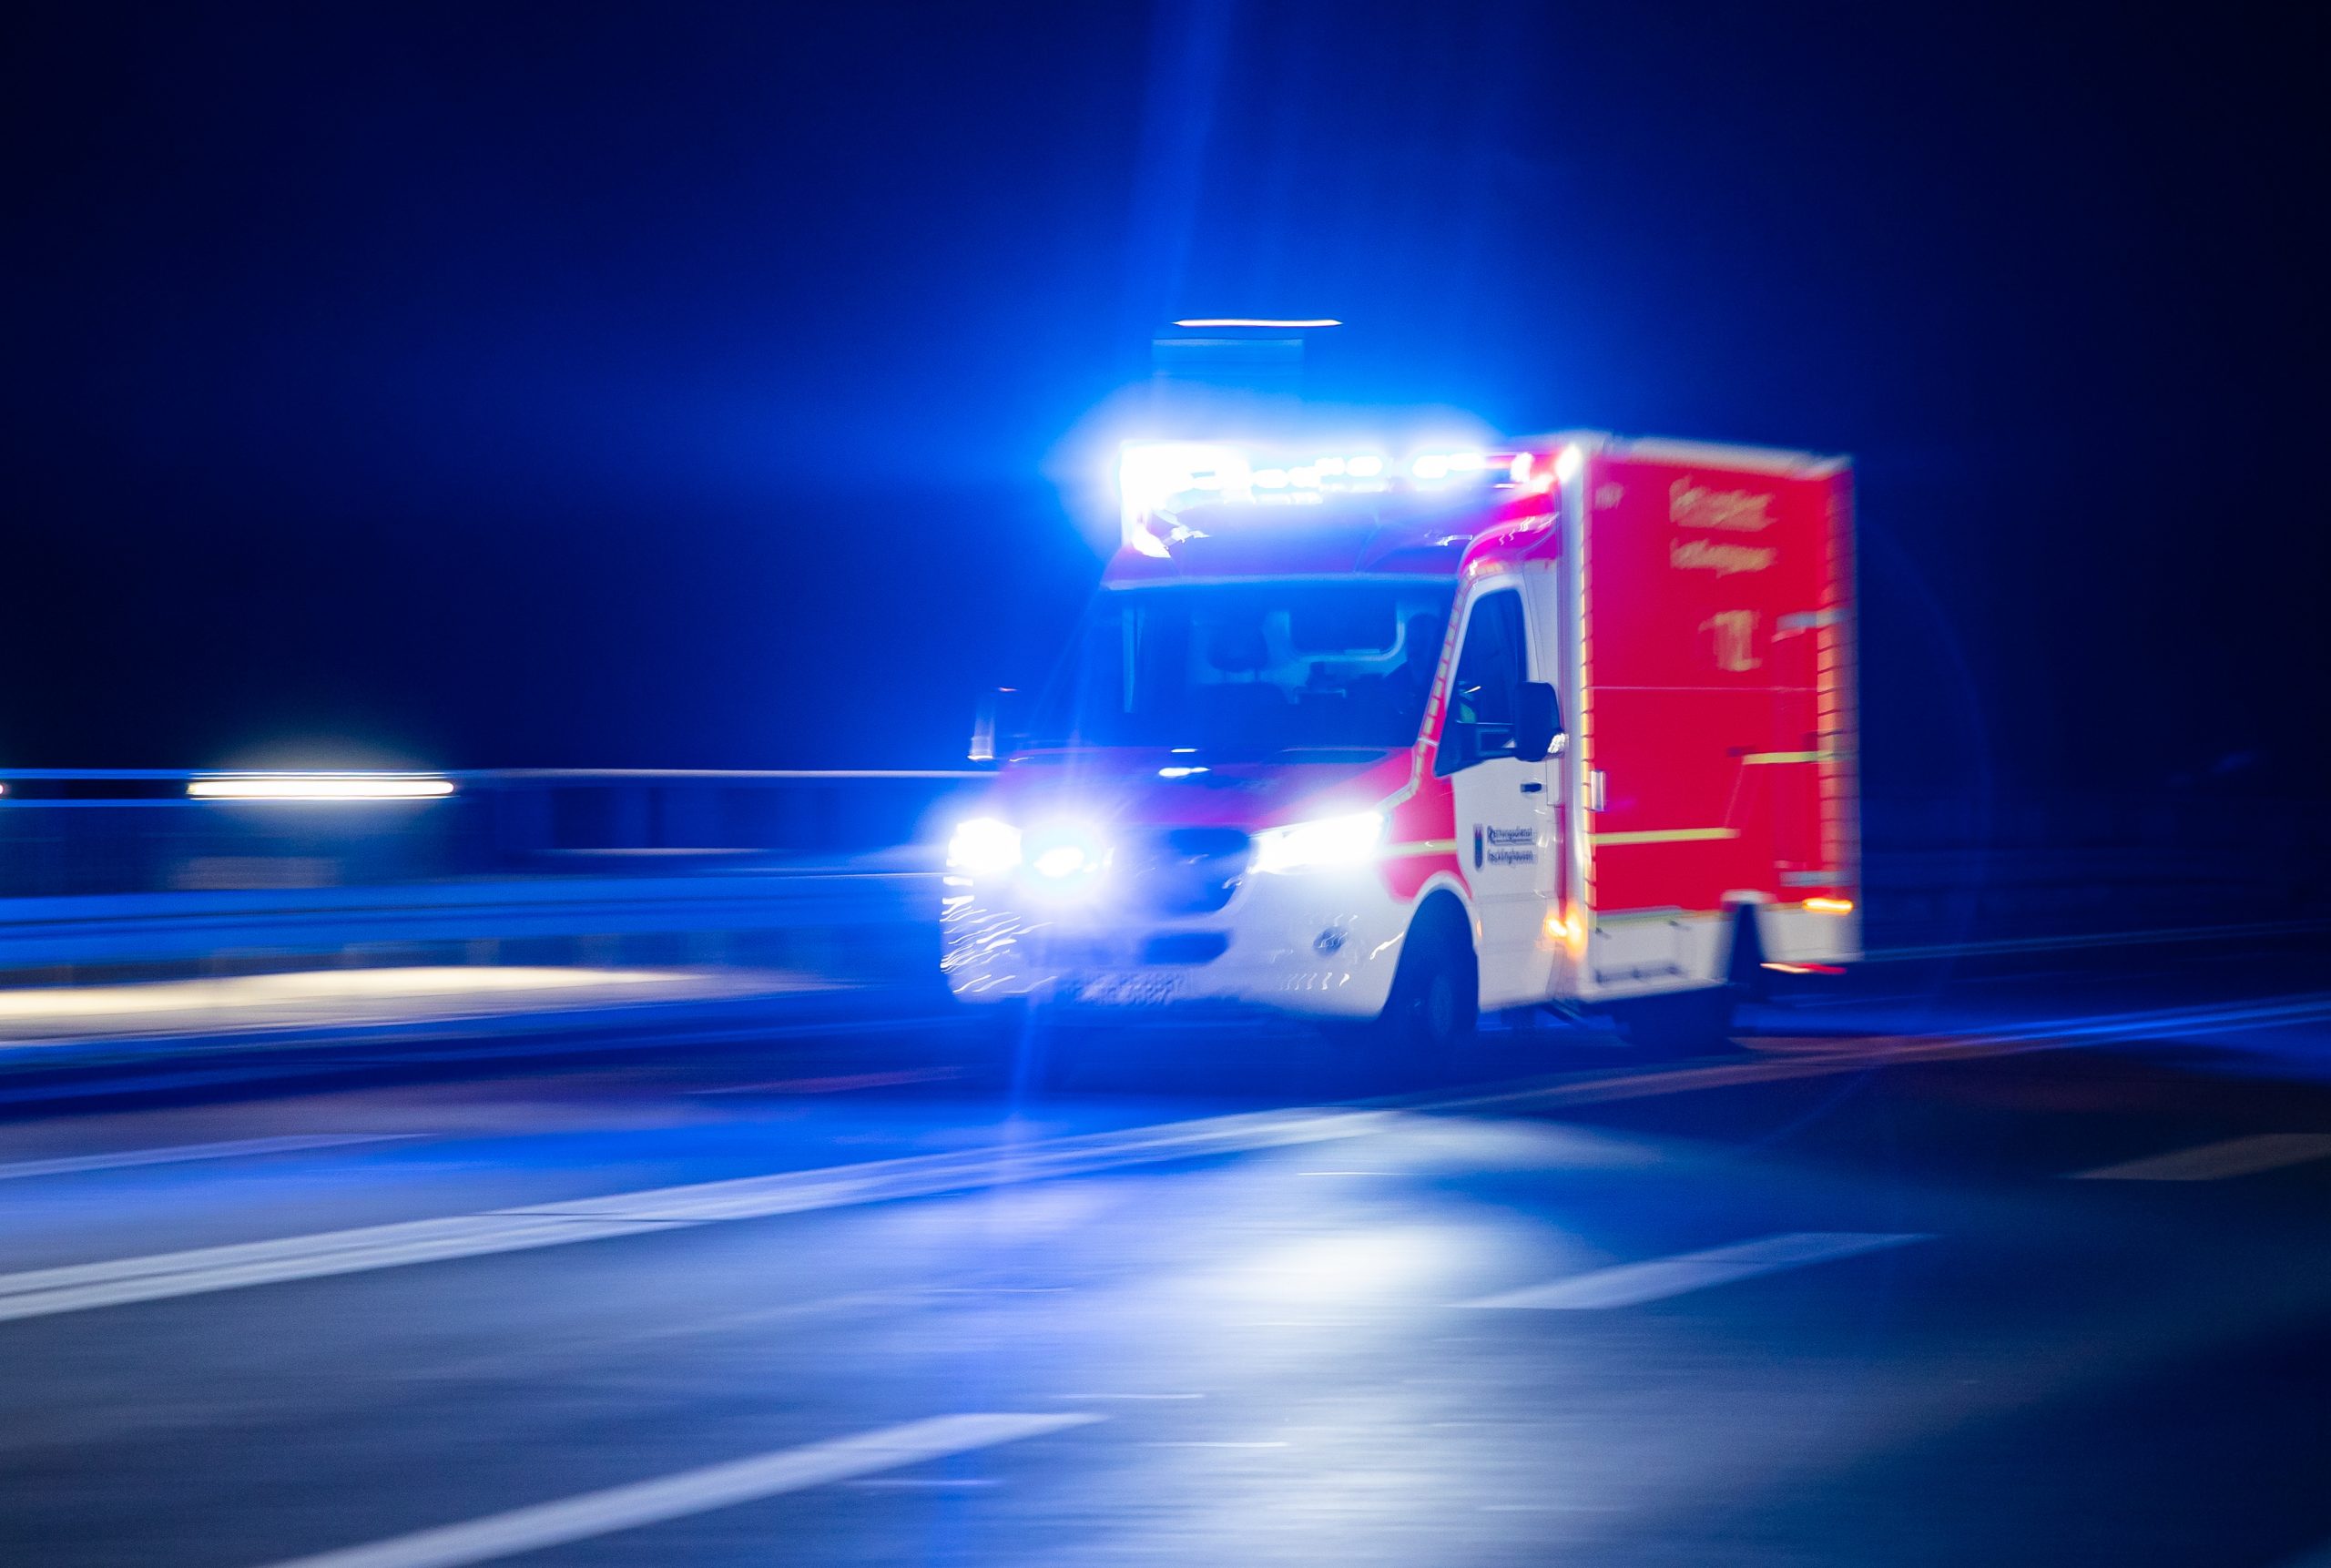 Rettungswagen im Einsatz. Eine 18-jährige Frau stürzte beim Schlafwandeln aus dem 5. Stock – sie wurde schwerverletzt ins Krankenhaus gebracht. (Symbolbild)